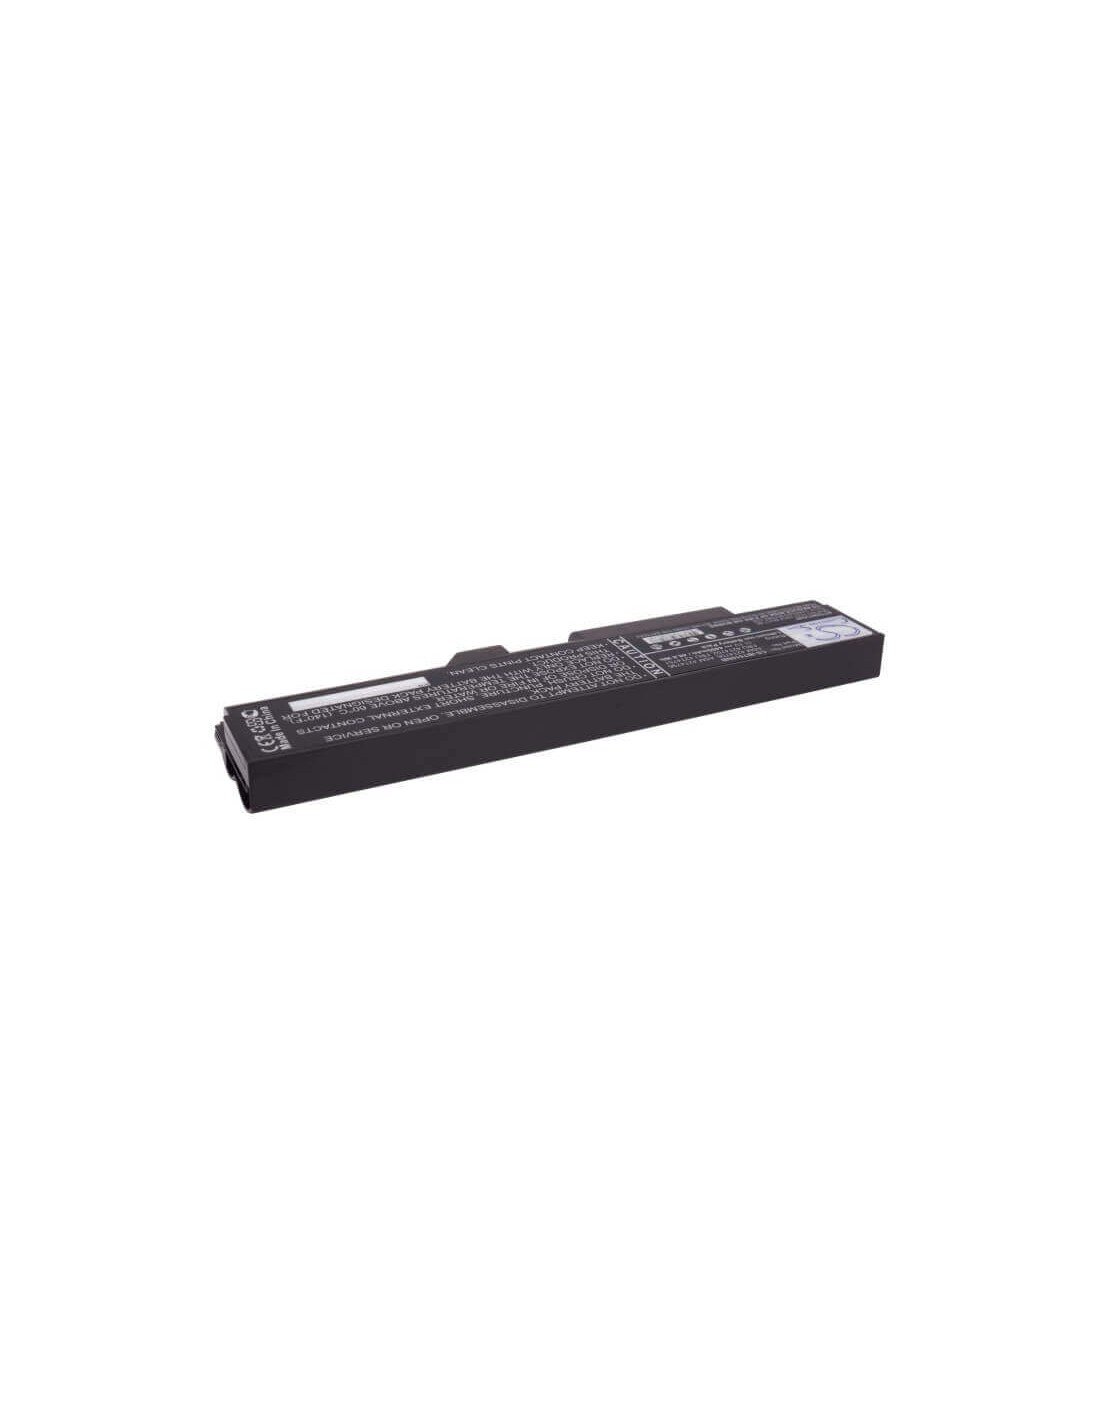 Black Battery for Lenovo Thinkpad E40, Thinkpad E50, Thinkpad Edge 0578-47b 11.1V, 4400mAh - 48.84Wh